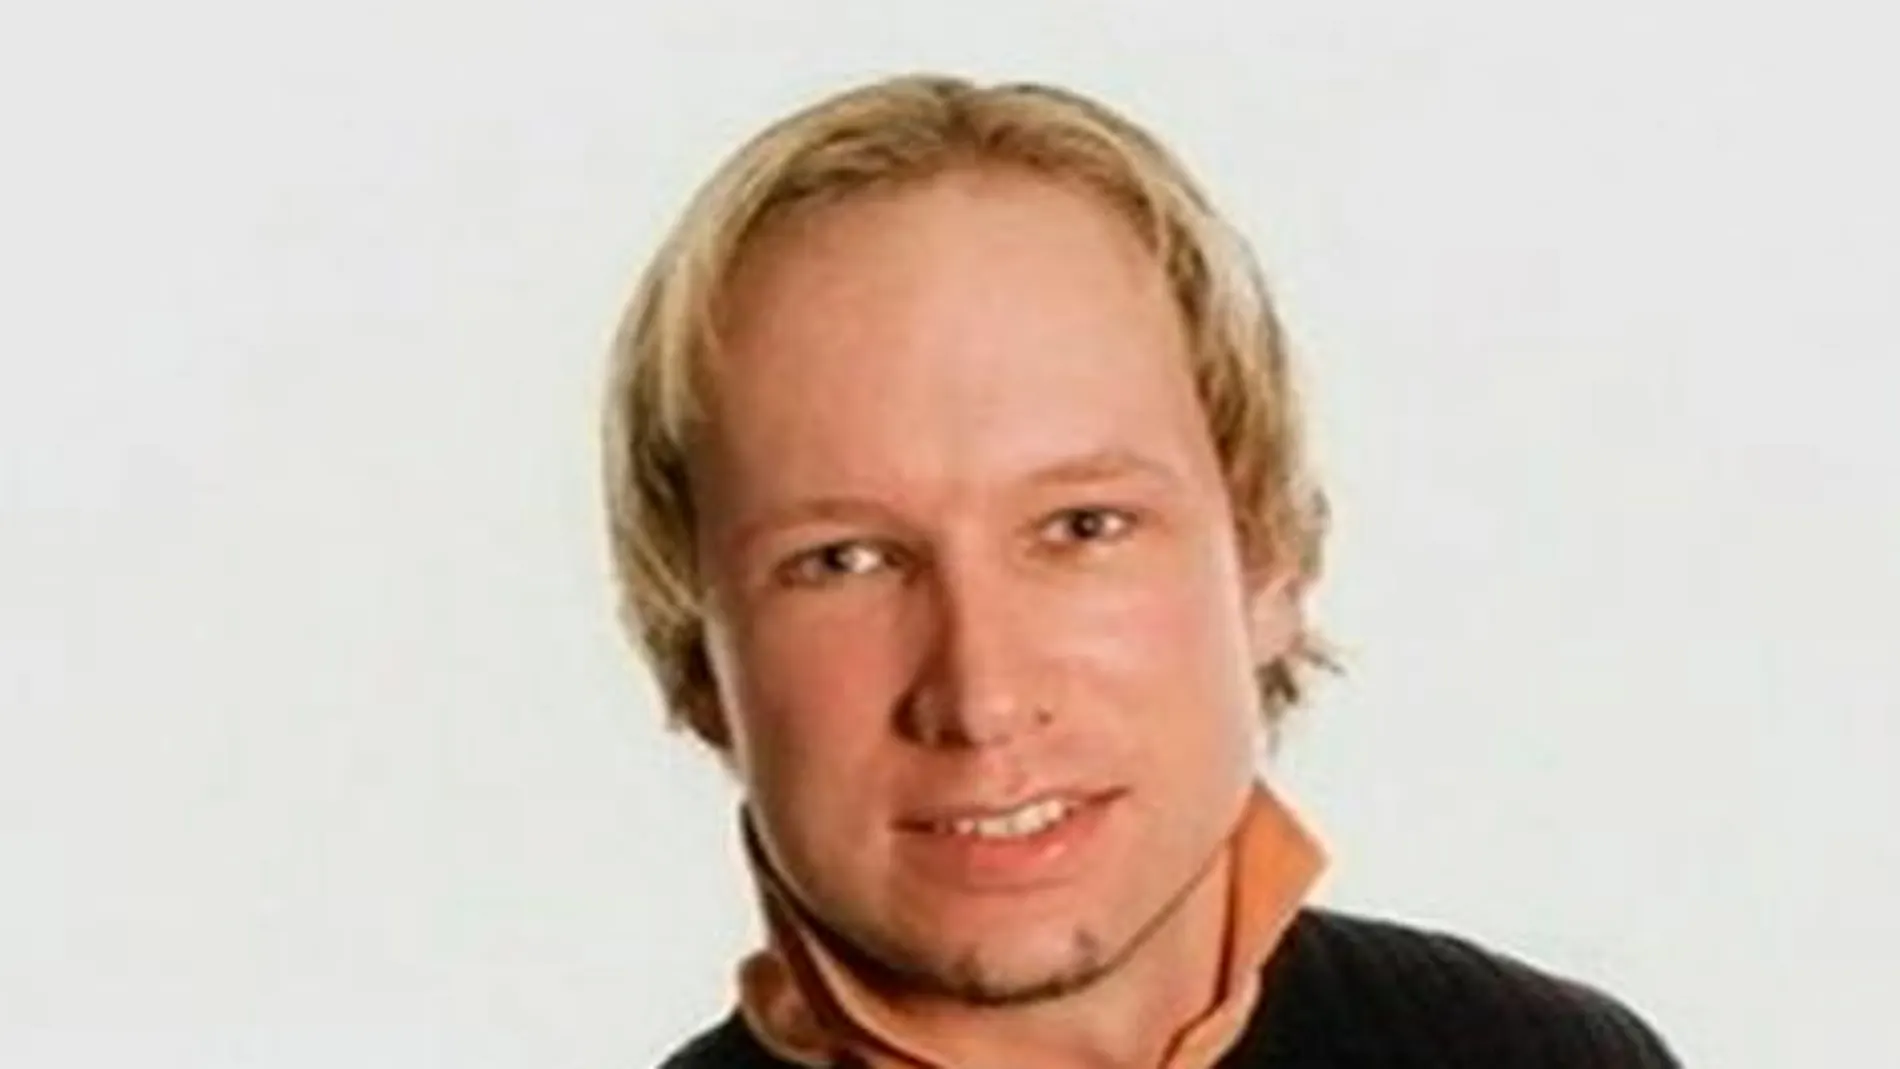 La Justicia noruega prolonga doce semanas más la prisión preventiva a Breivik